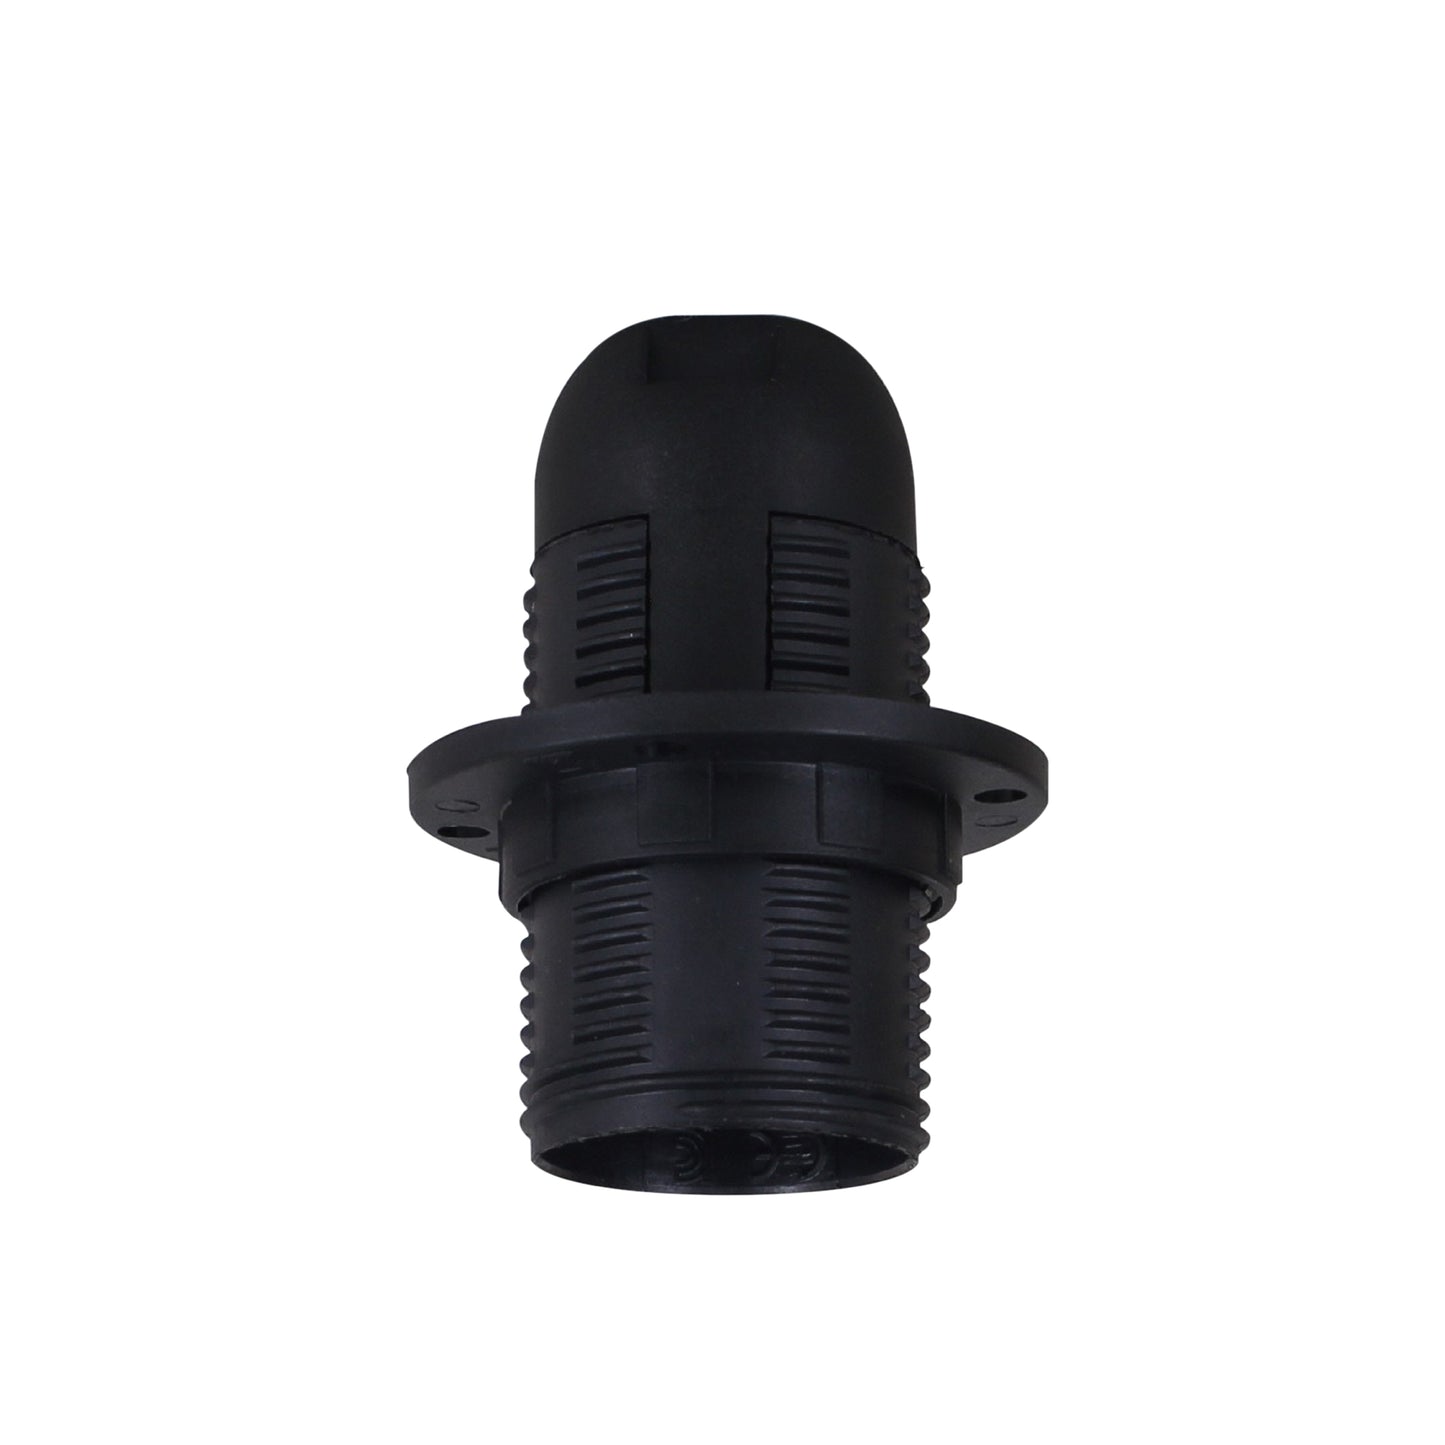 E14 Bulb Holder Edison Small Screw SES Black Plastic Lamp holder For Table Lamp E14 Socket UK.